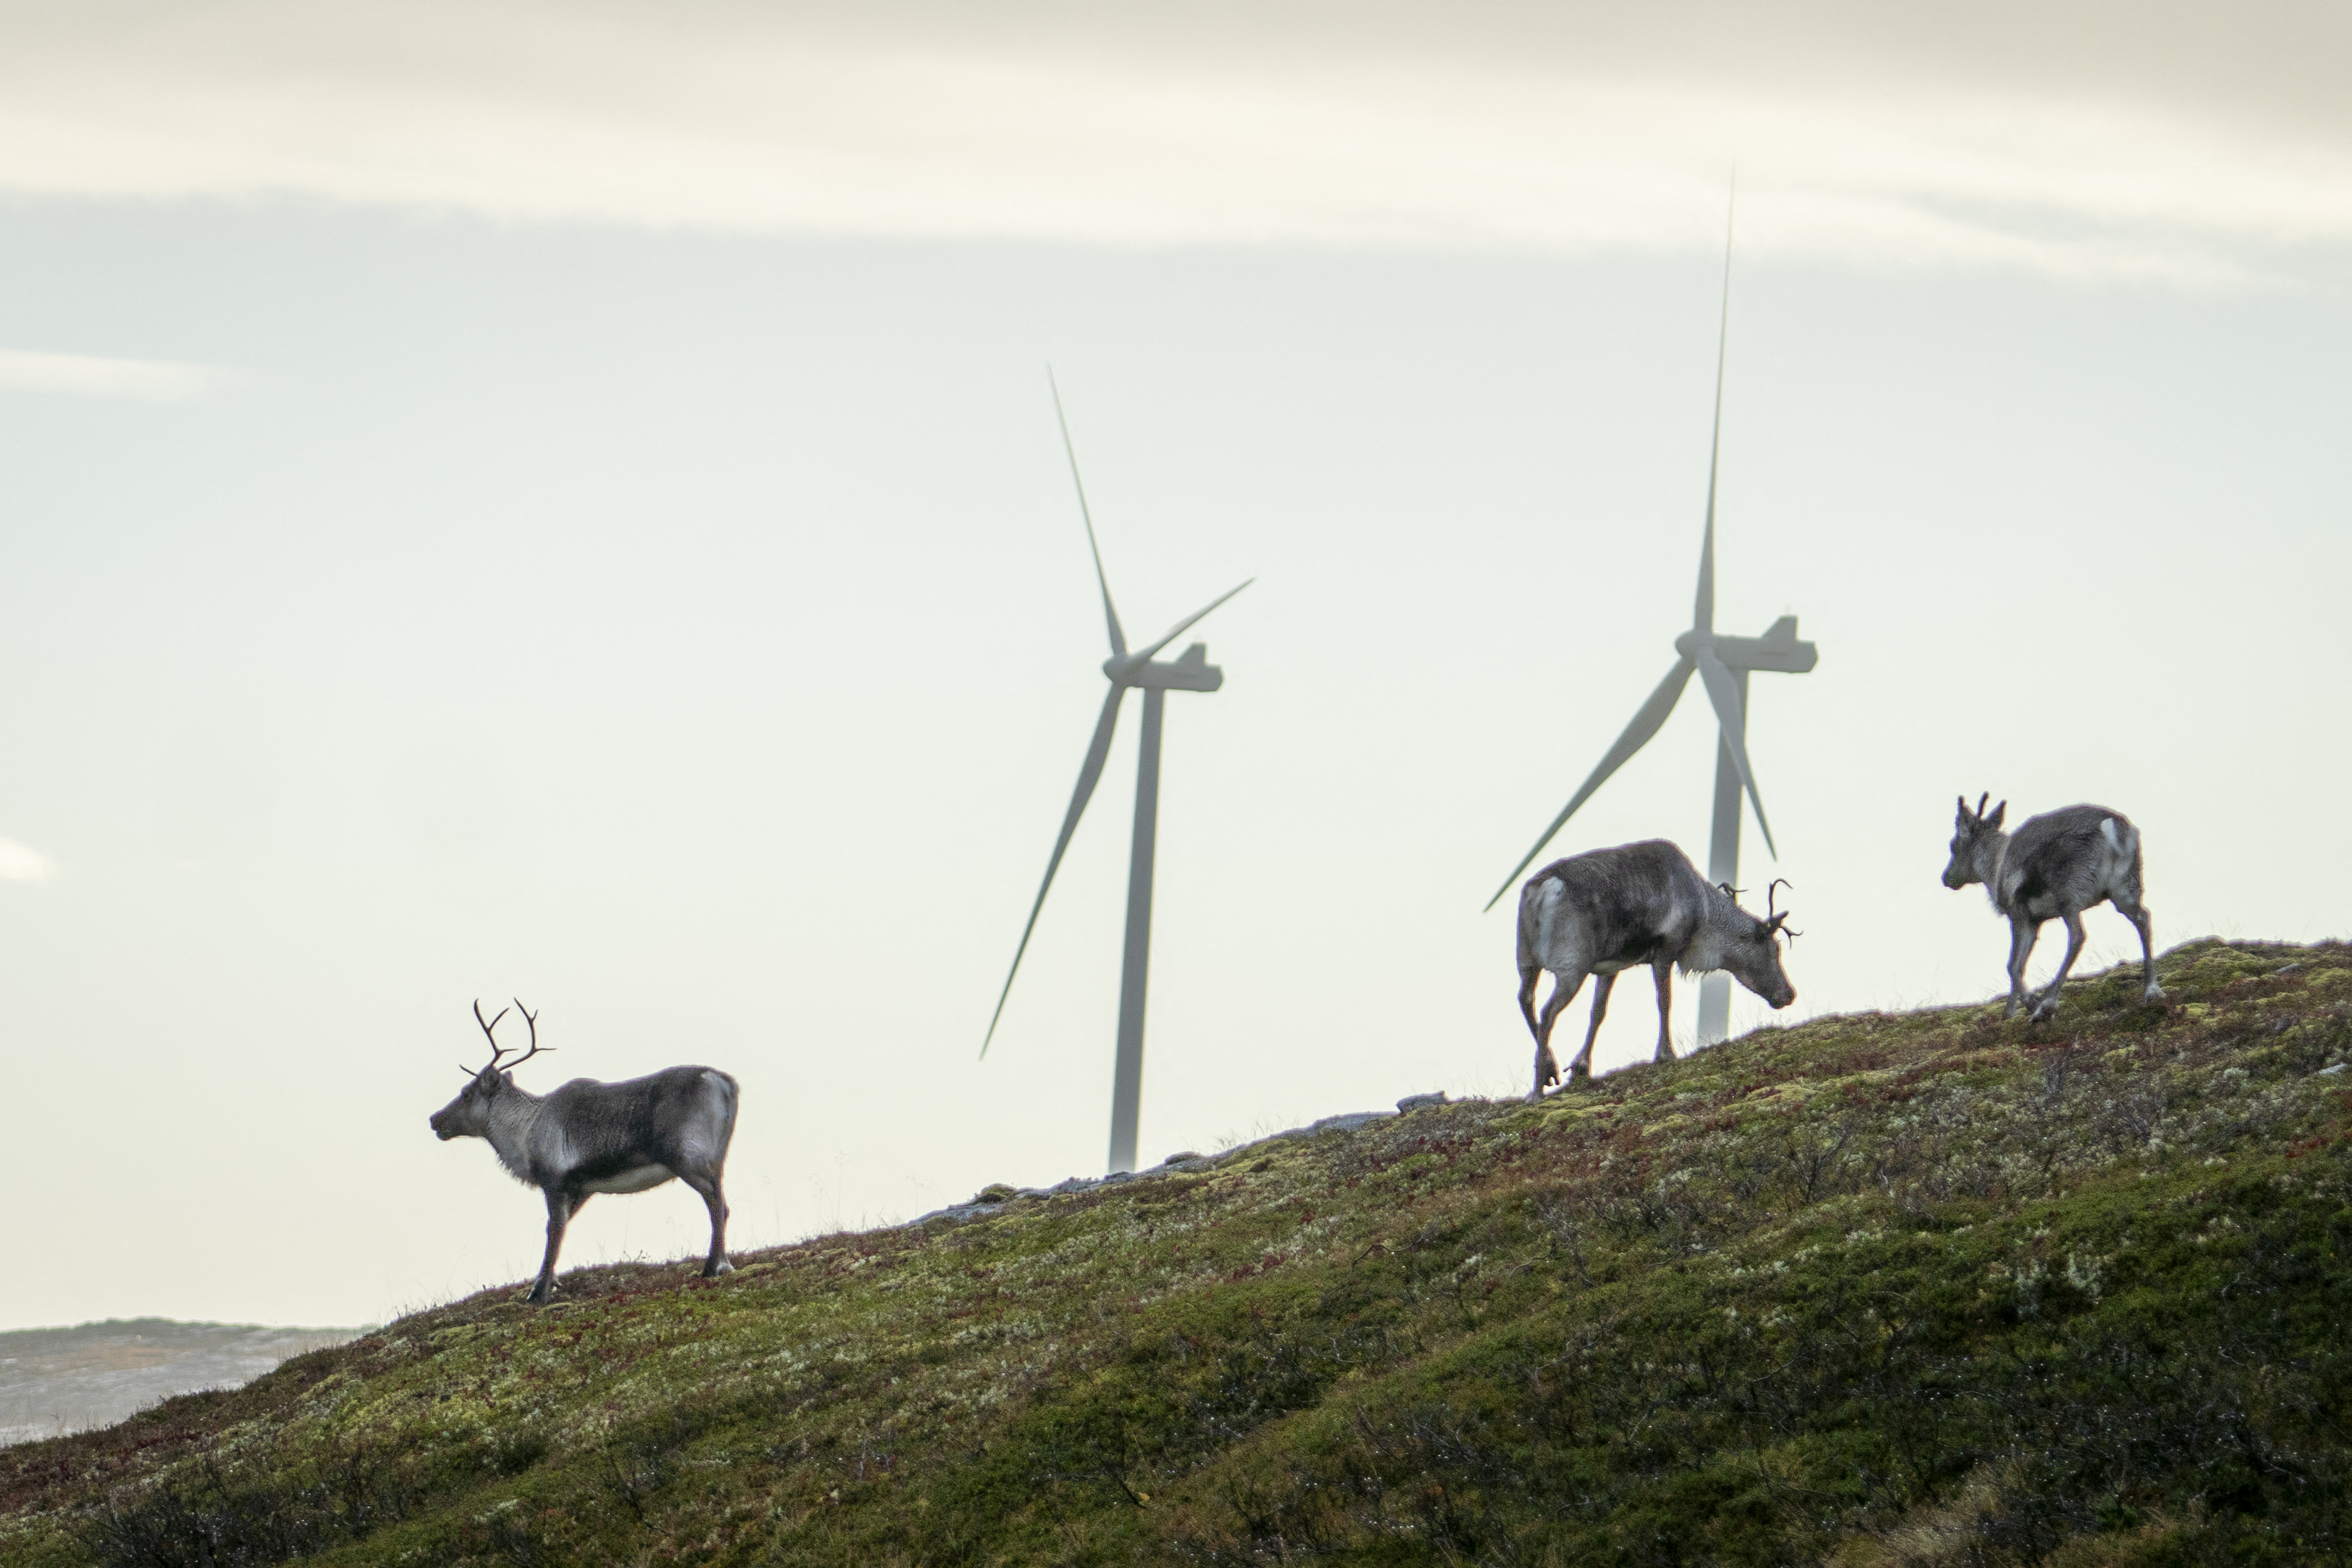 Az őslakos rénszarvastenyésztők pert nyertek két szélparkkal szemben Norvégiában